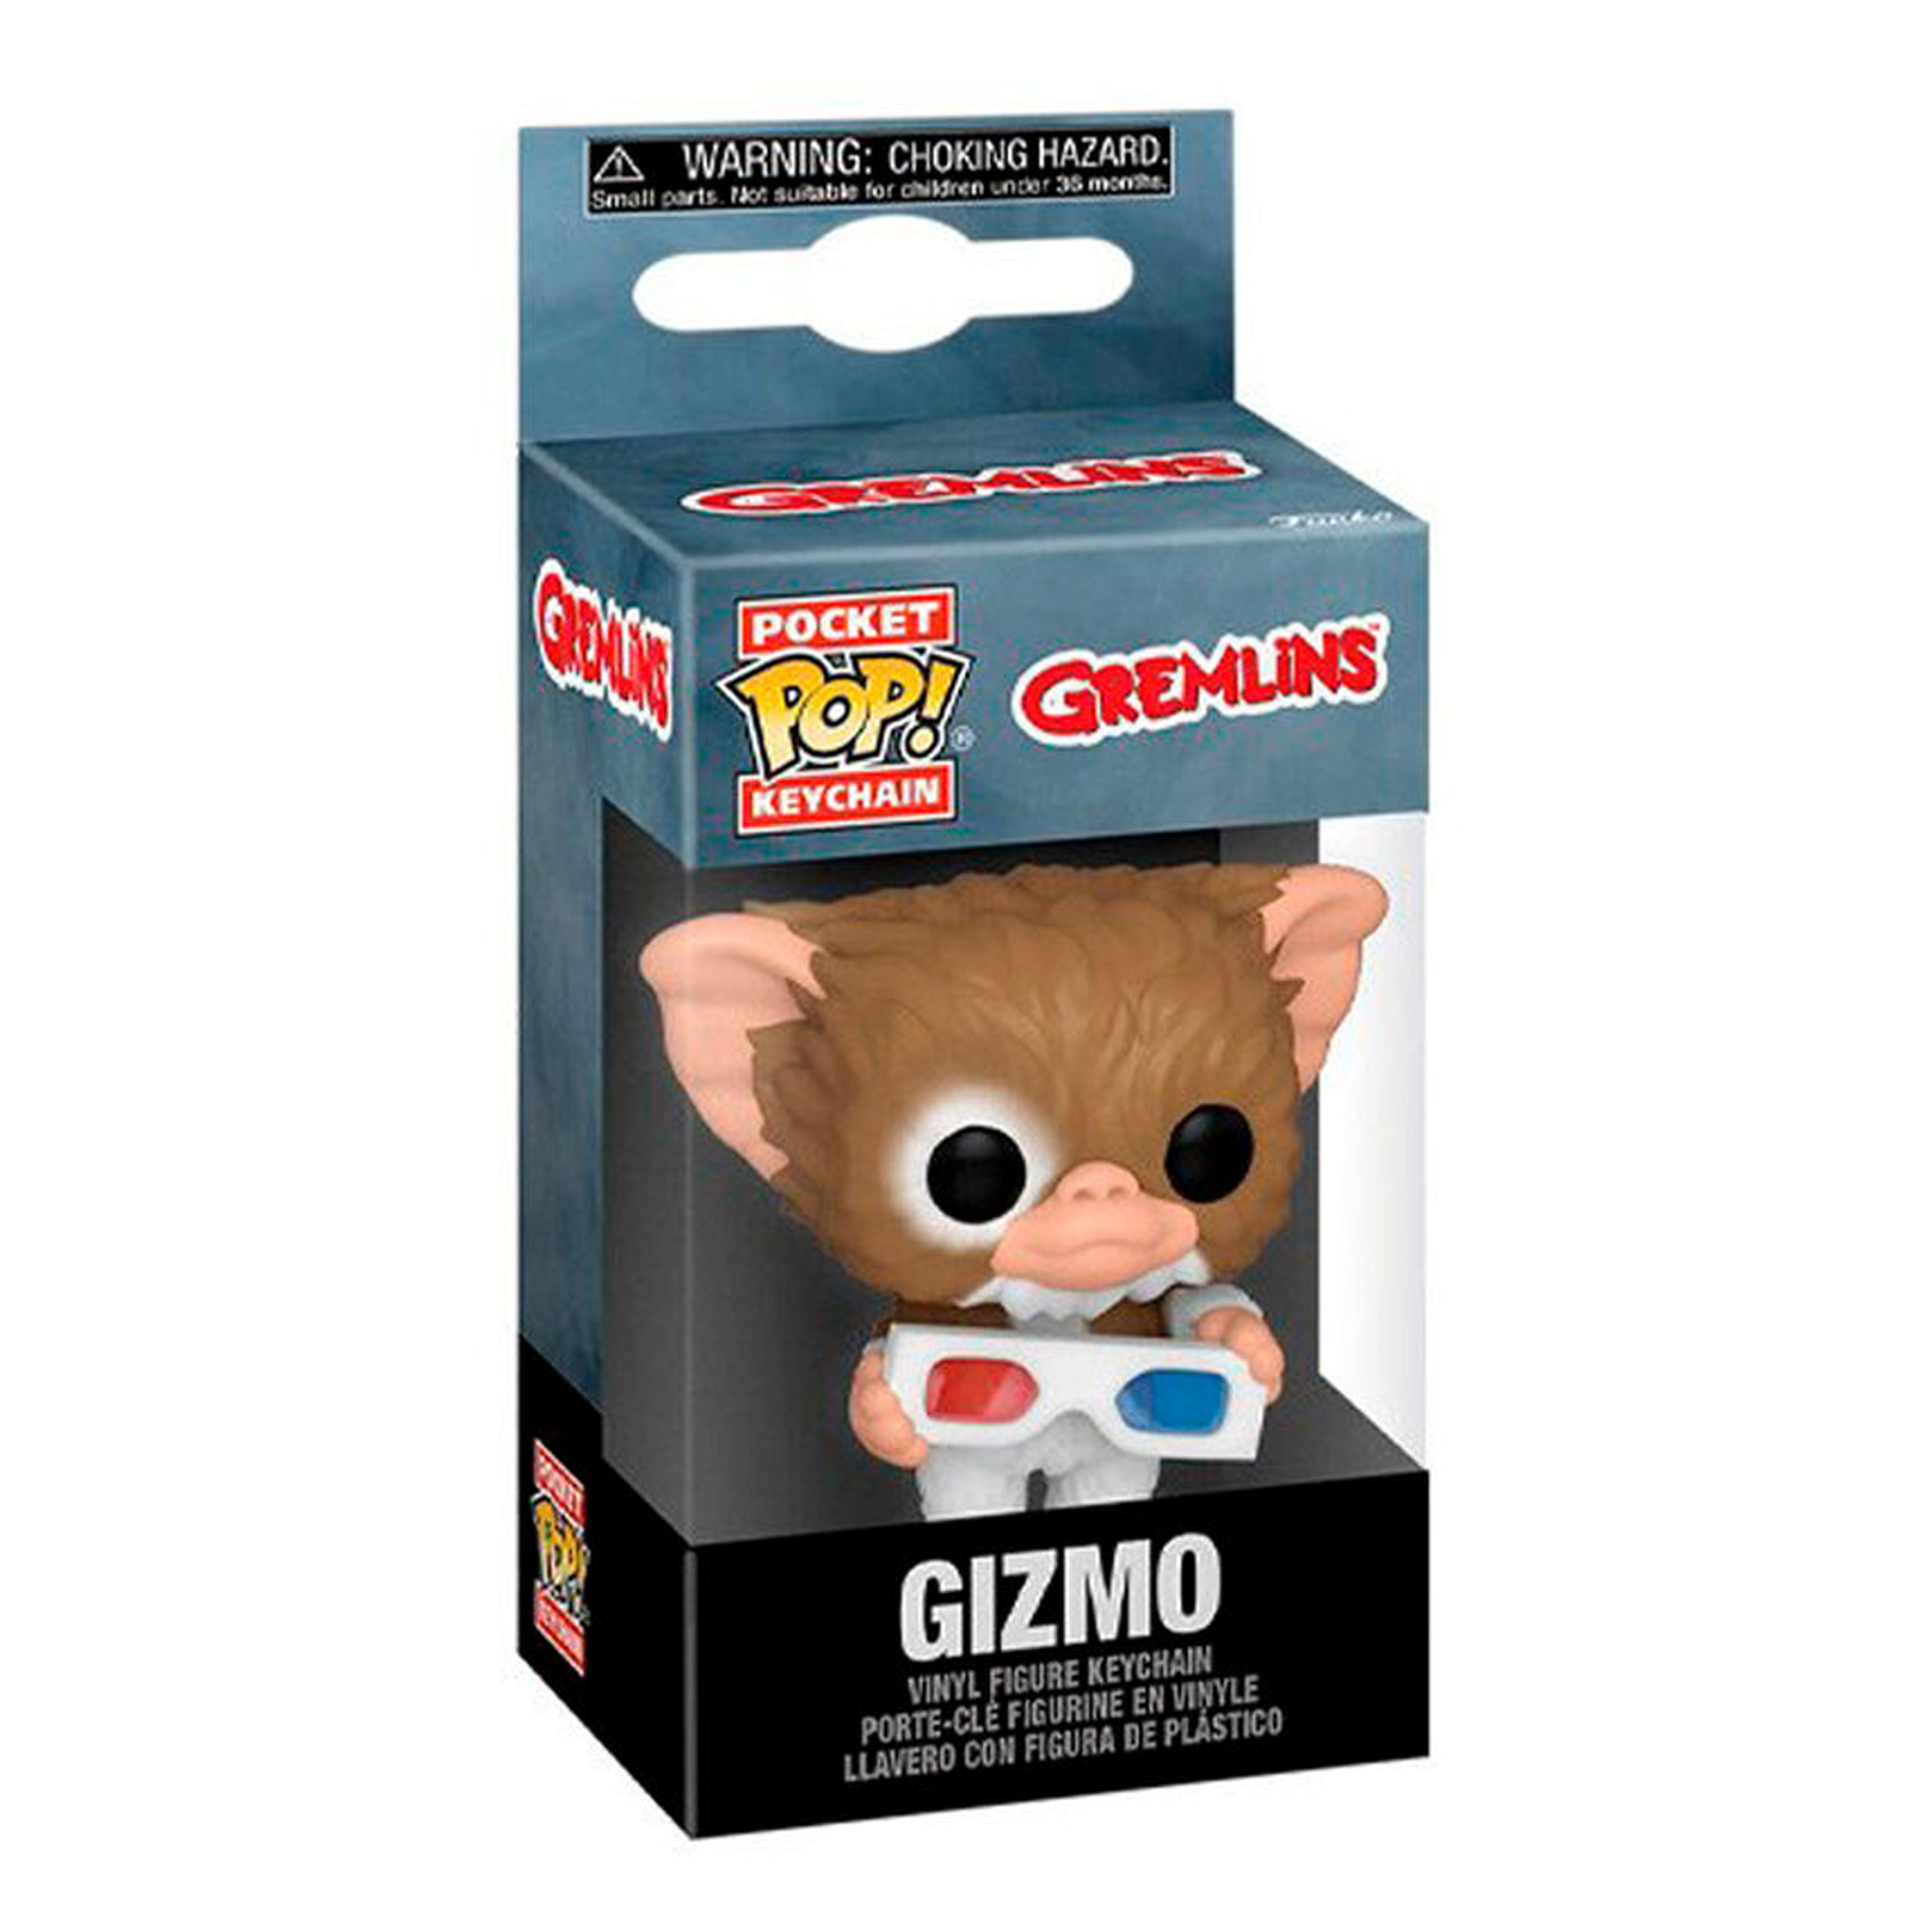 Pocket POP! Gizmo with Glasses - Gremlins